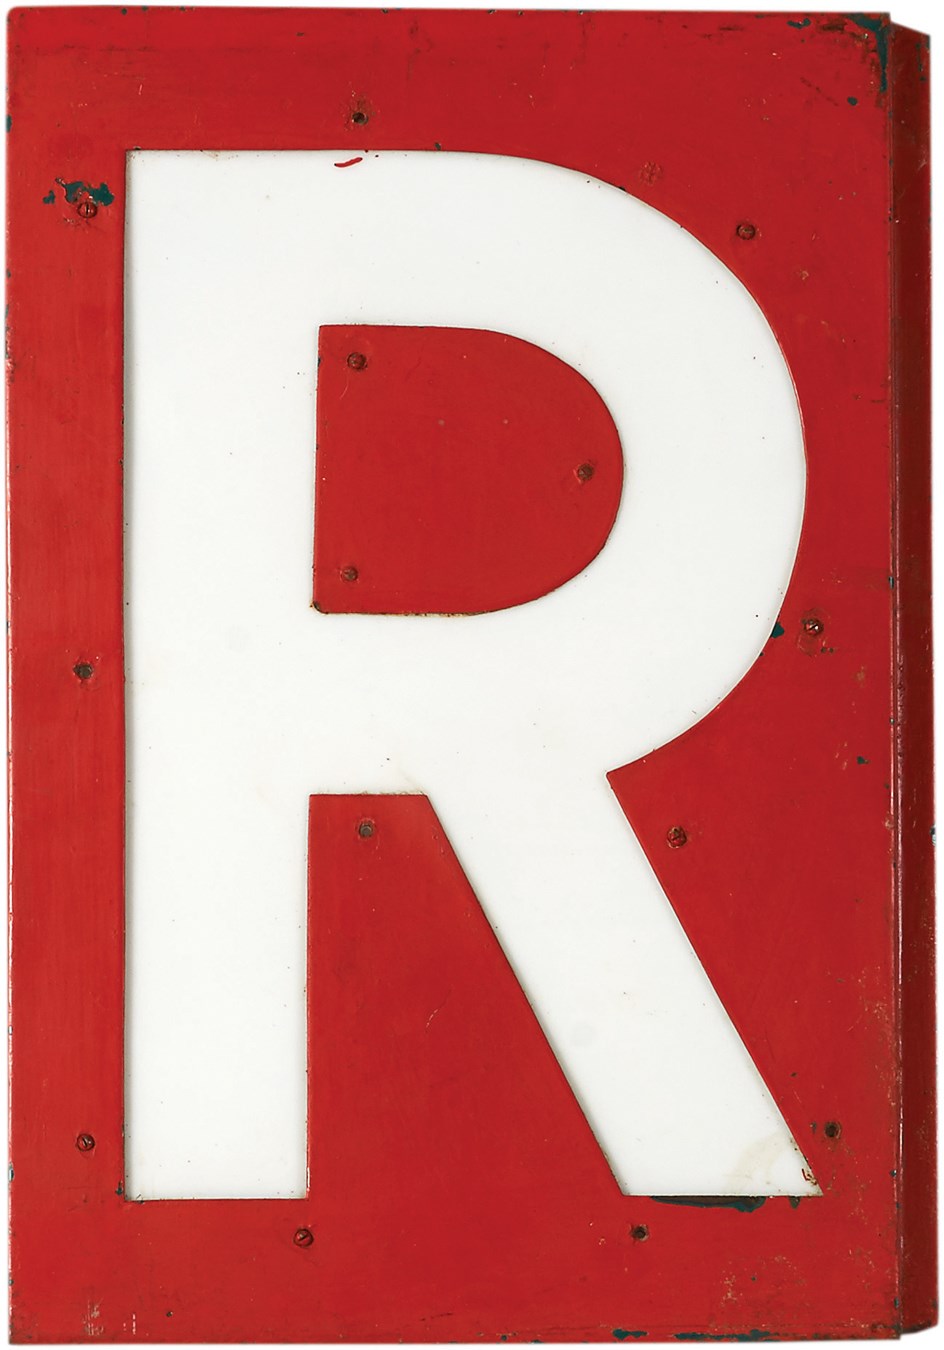 - 1930s Wrigley Field Scoreboard Letter "R" in "Wrigley Field" Marquee